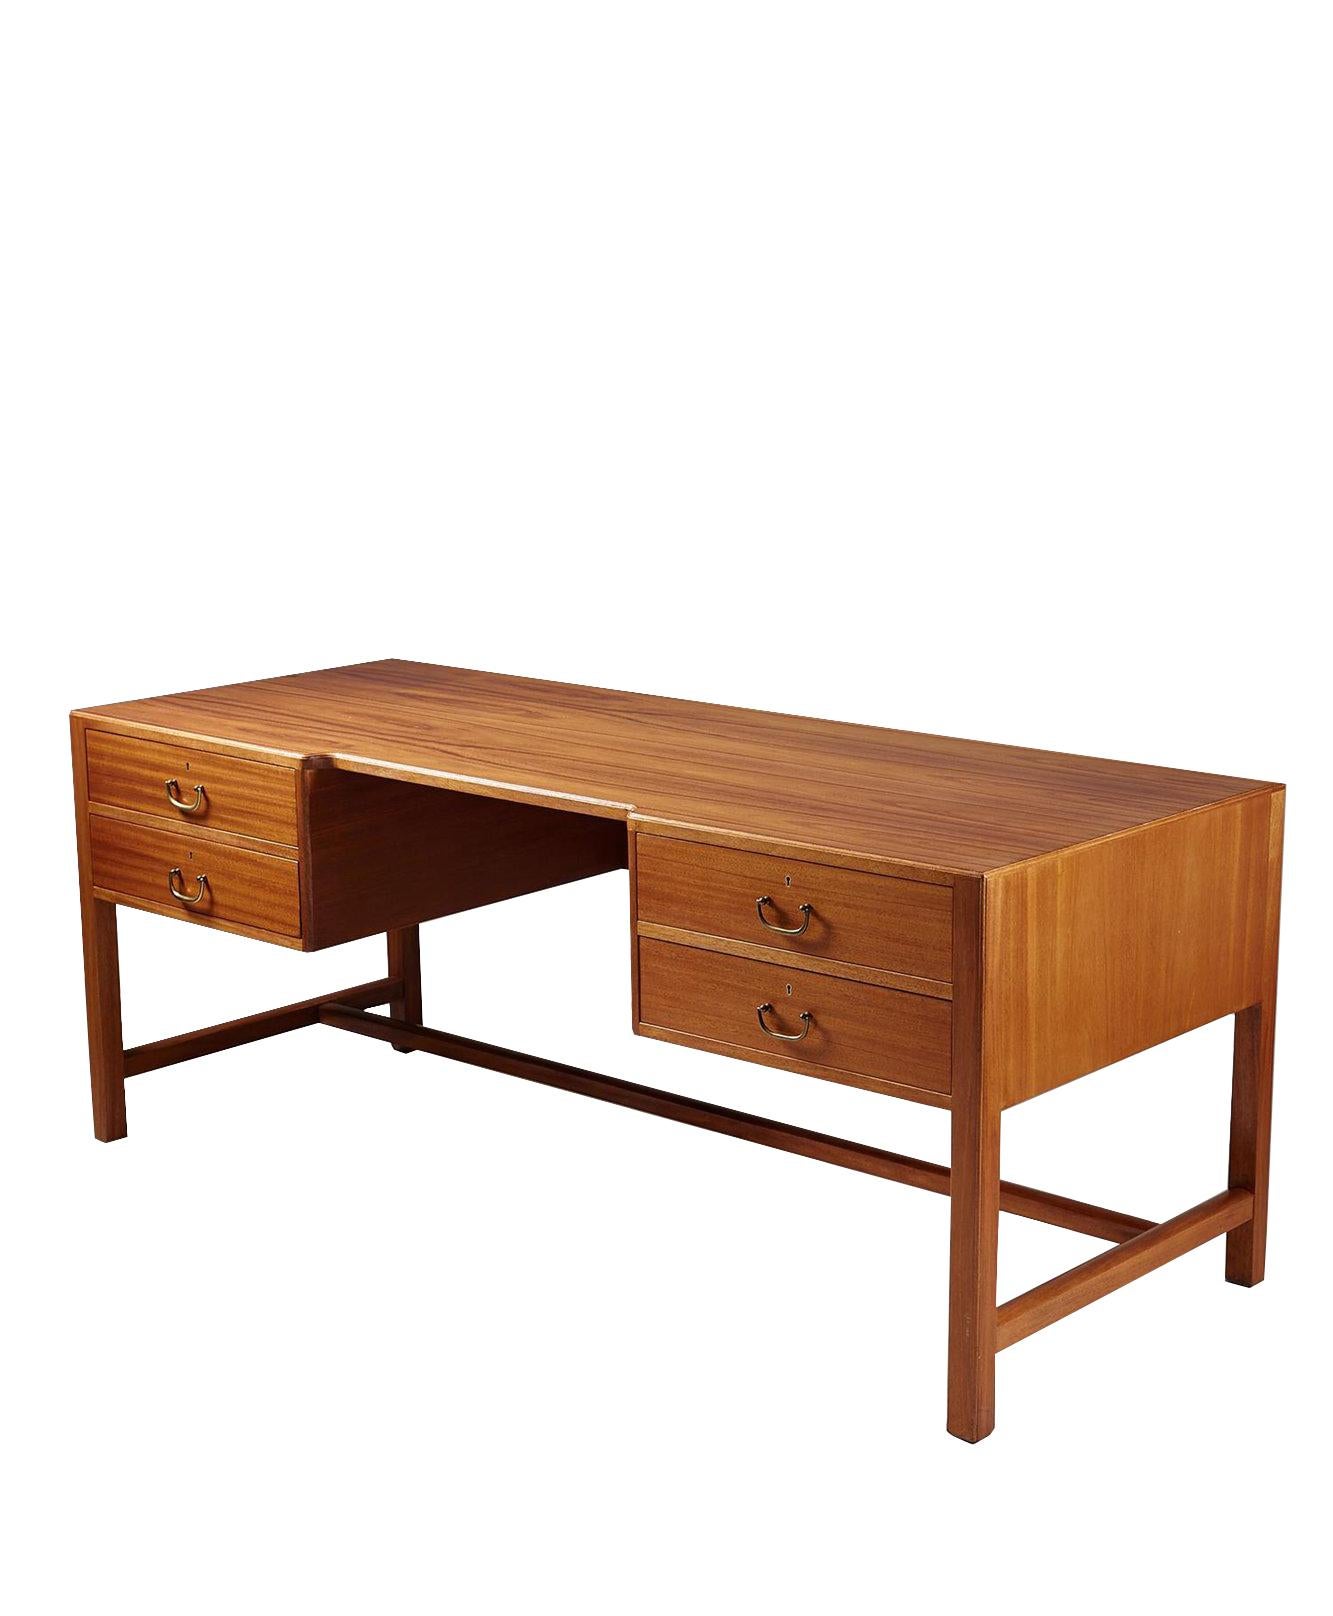 Vintage Josef Frank fegen Schritt Mahagoni vier-Schublade Schreibtisch in gutem Zustand mit Messing-Beschläge; um 1932.

